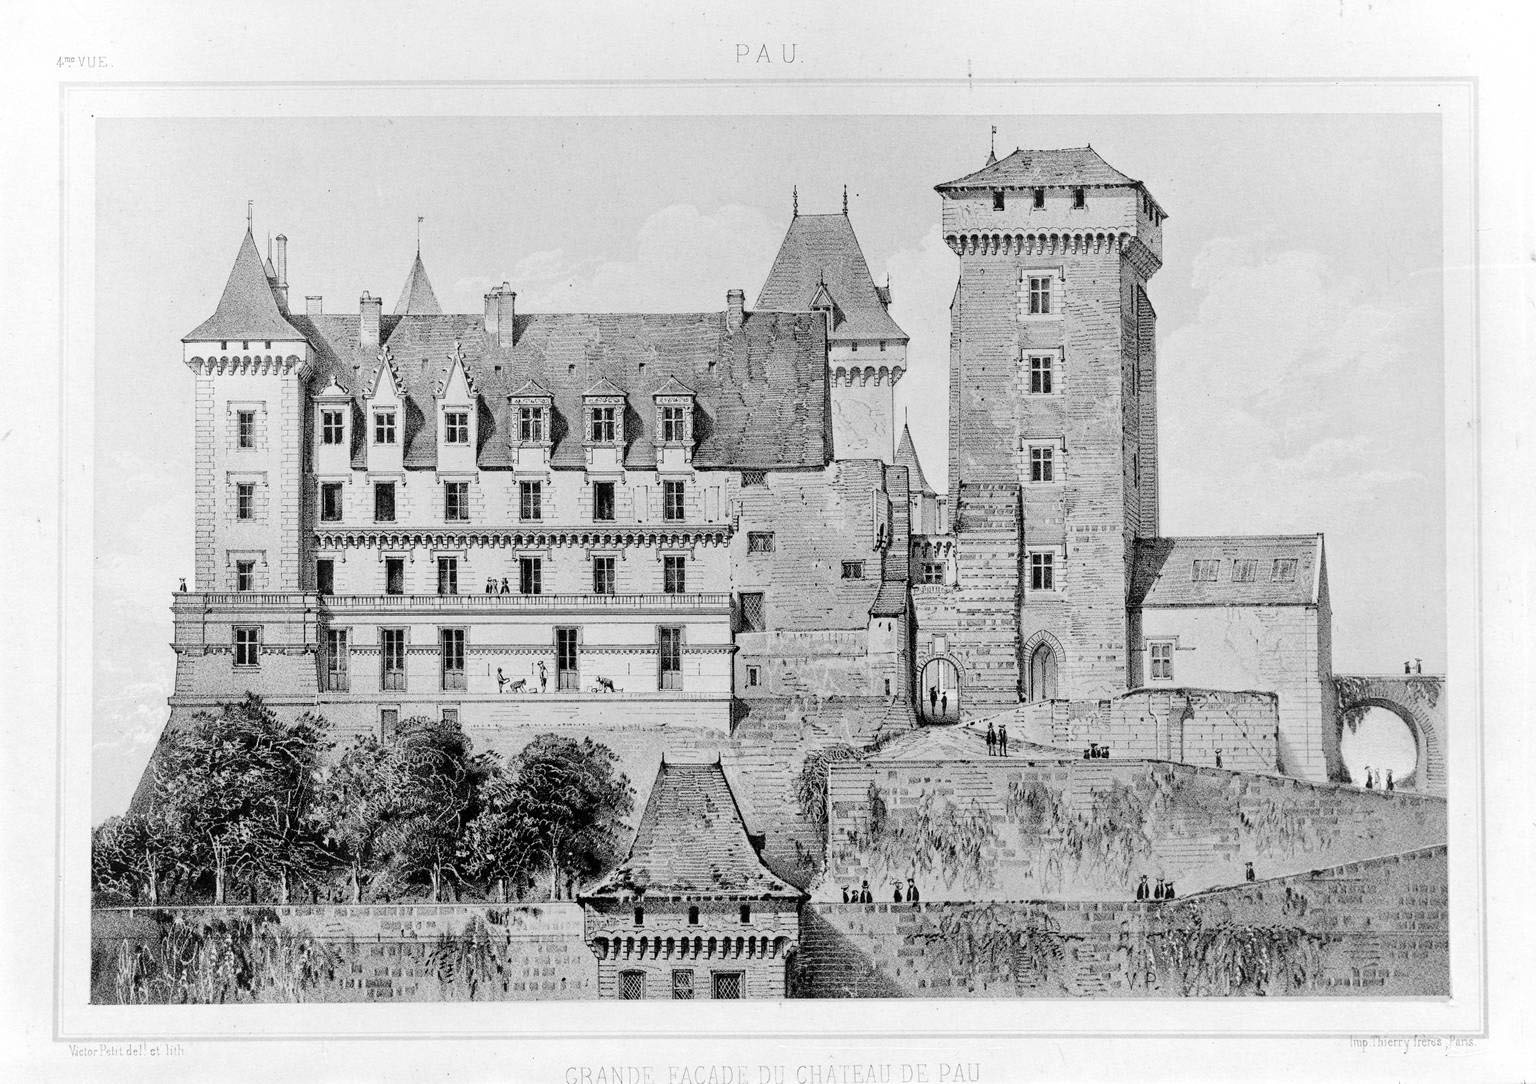 Grande façade du château de Pau prise du côté du Midi. (Souvenirs de Pau. Dessinés d'après nature et lithographiés par Victor Petit (Bassy, Auguste), 1854 (?).